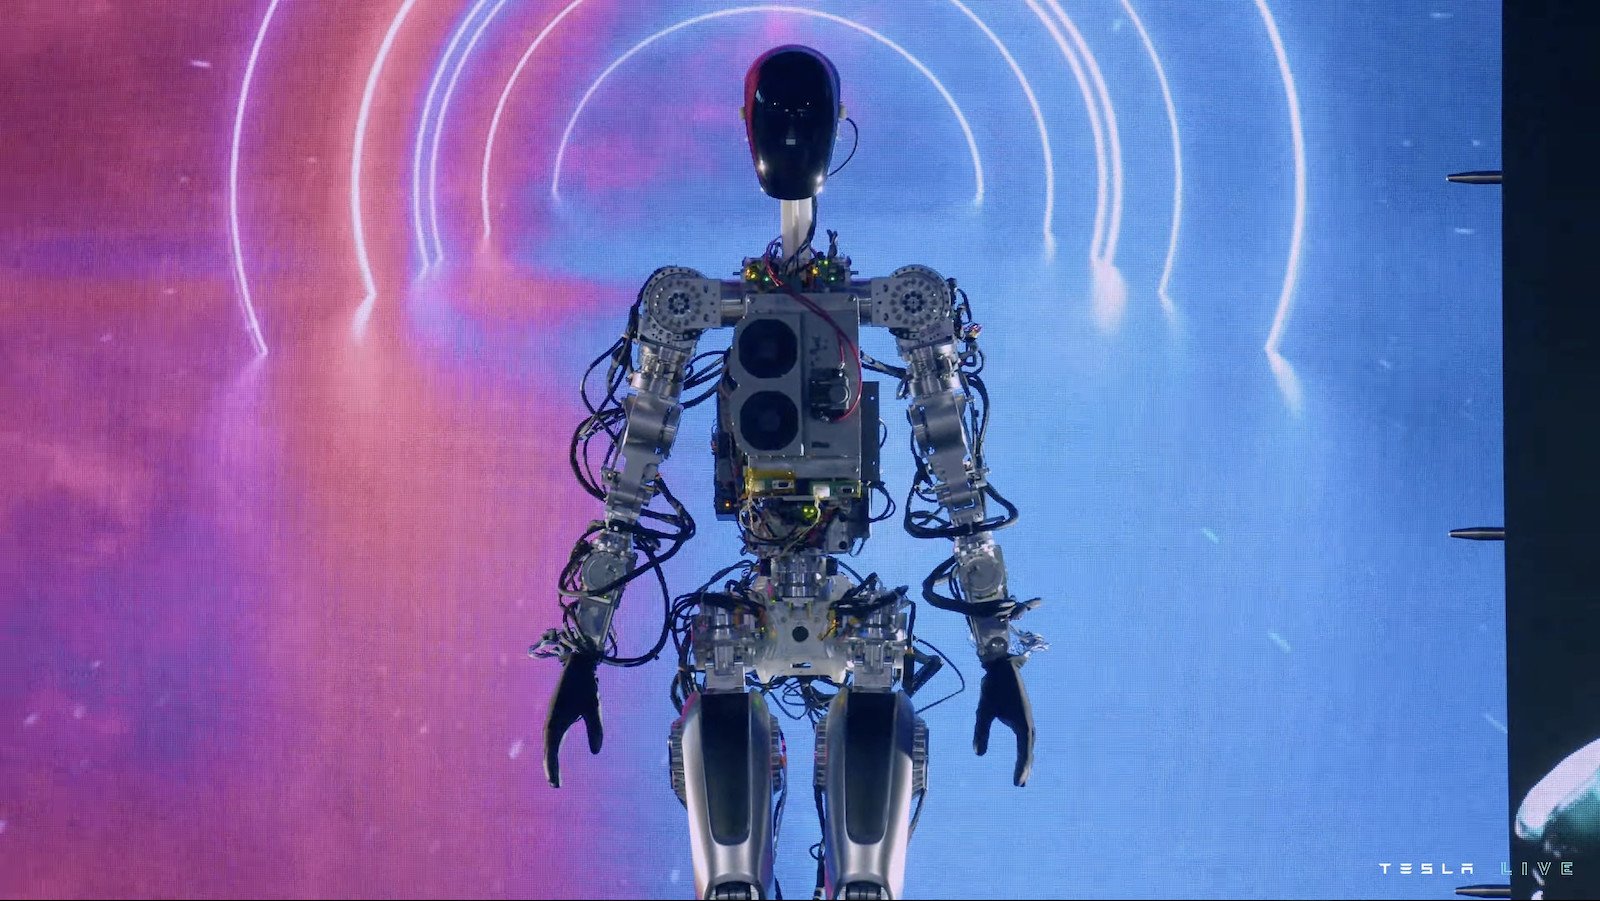 Η Tesla παρουσιάζει ένα απογοητευτικό πρωτότυπο ανθρωπόμορφου ρομπότ στην AI Day